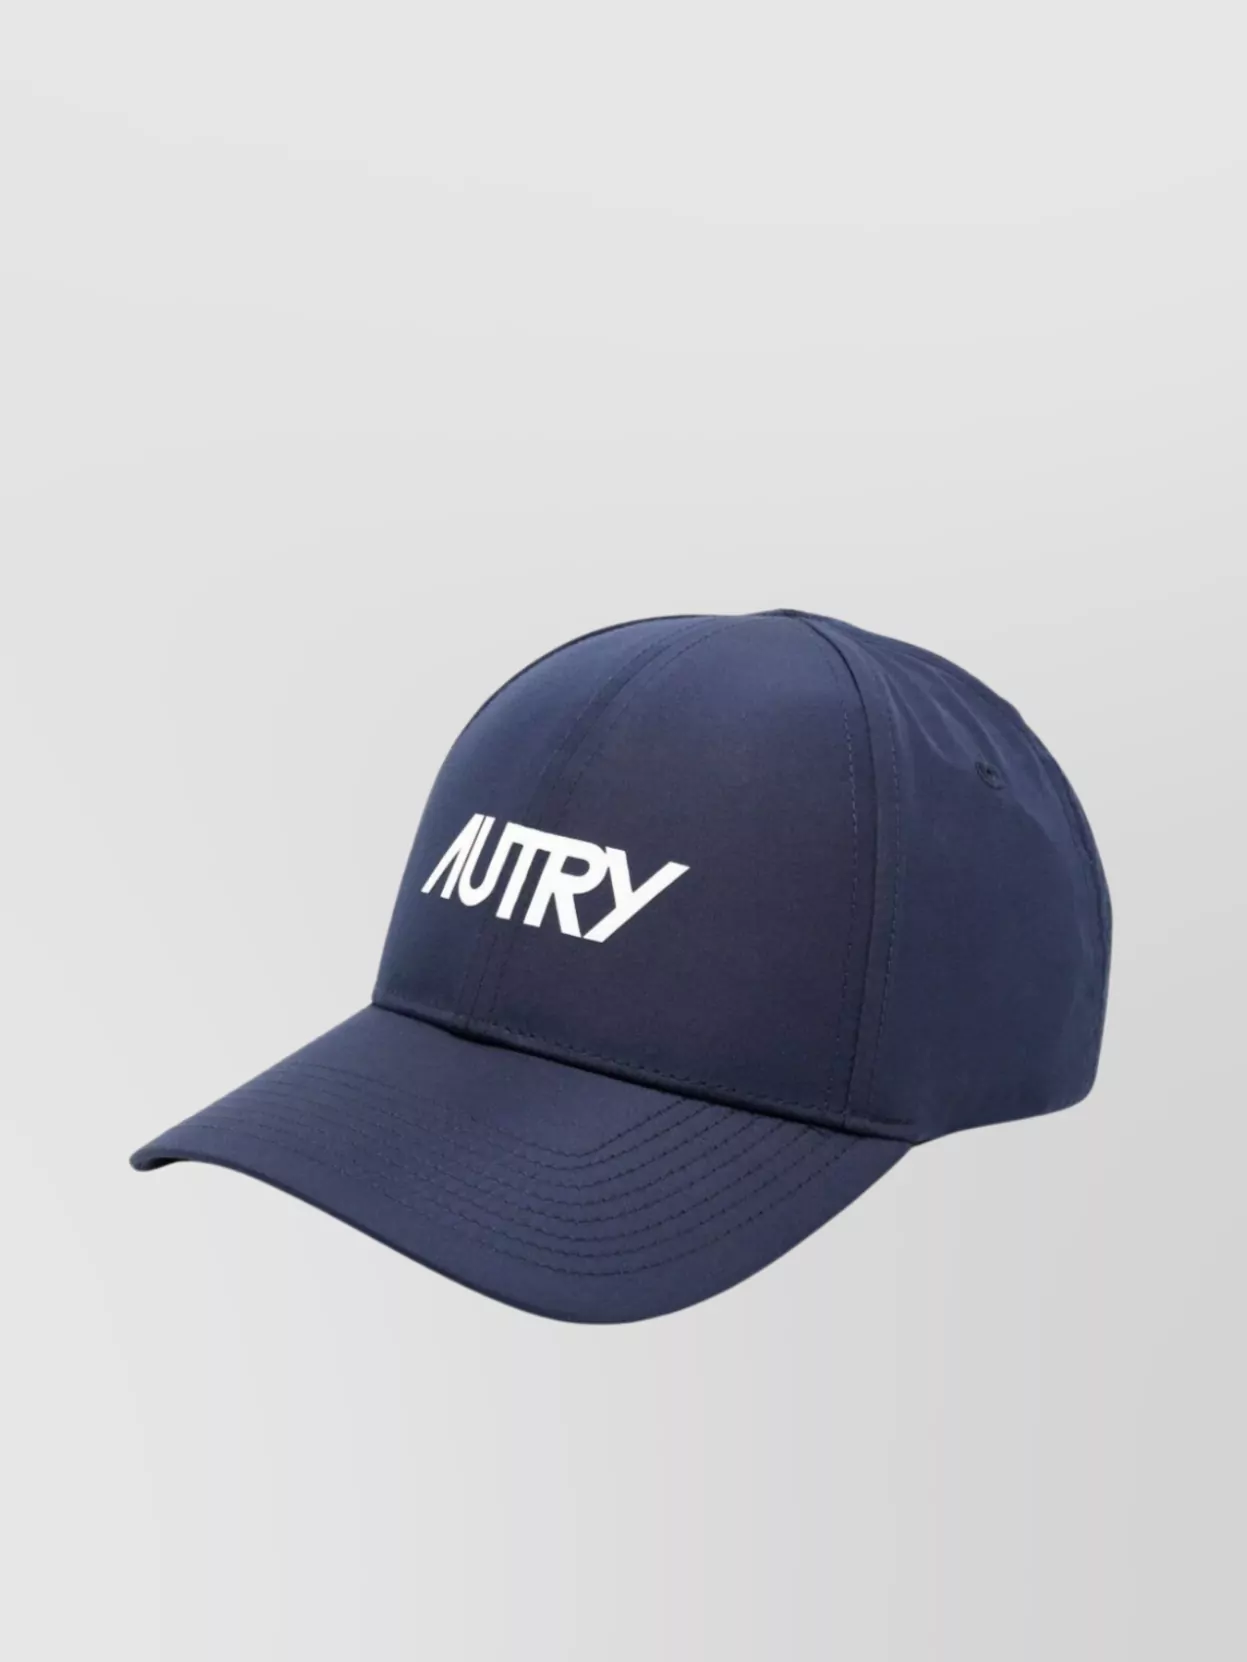 Shop Autry Logo Brim Hat Stitched Holes